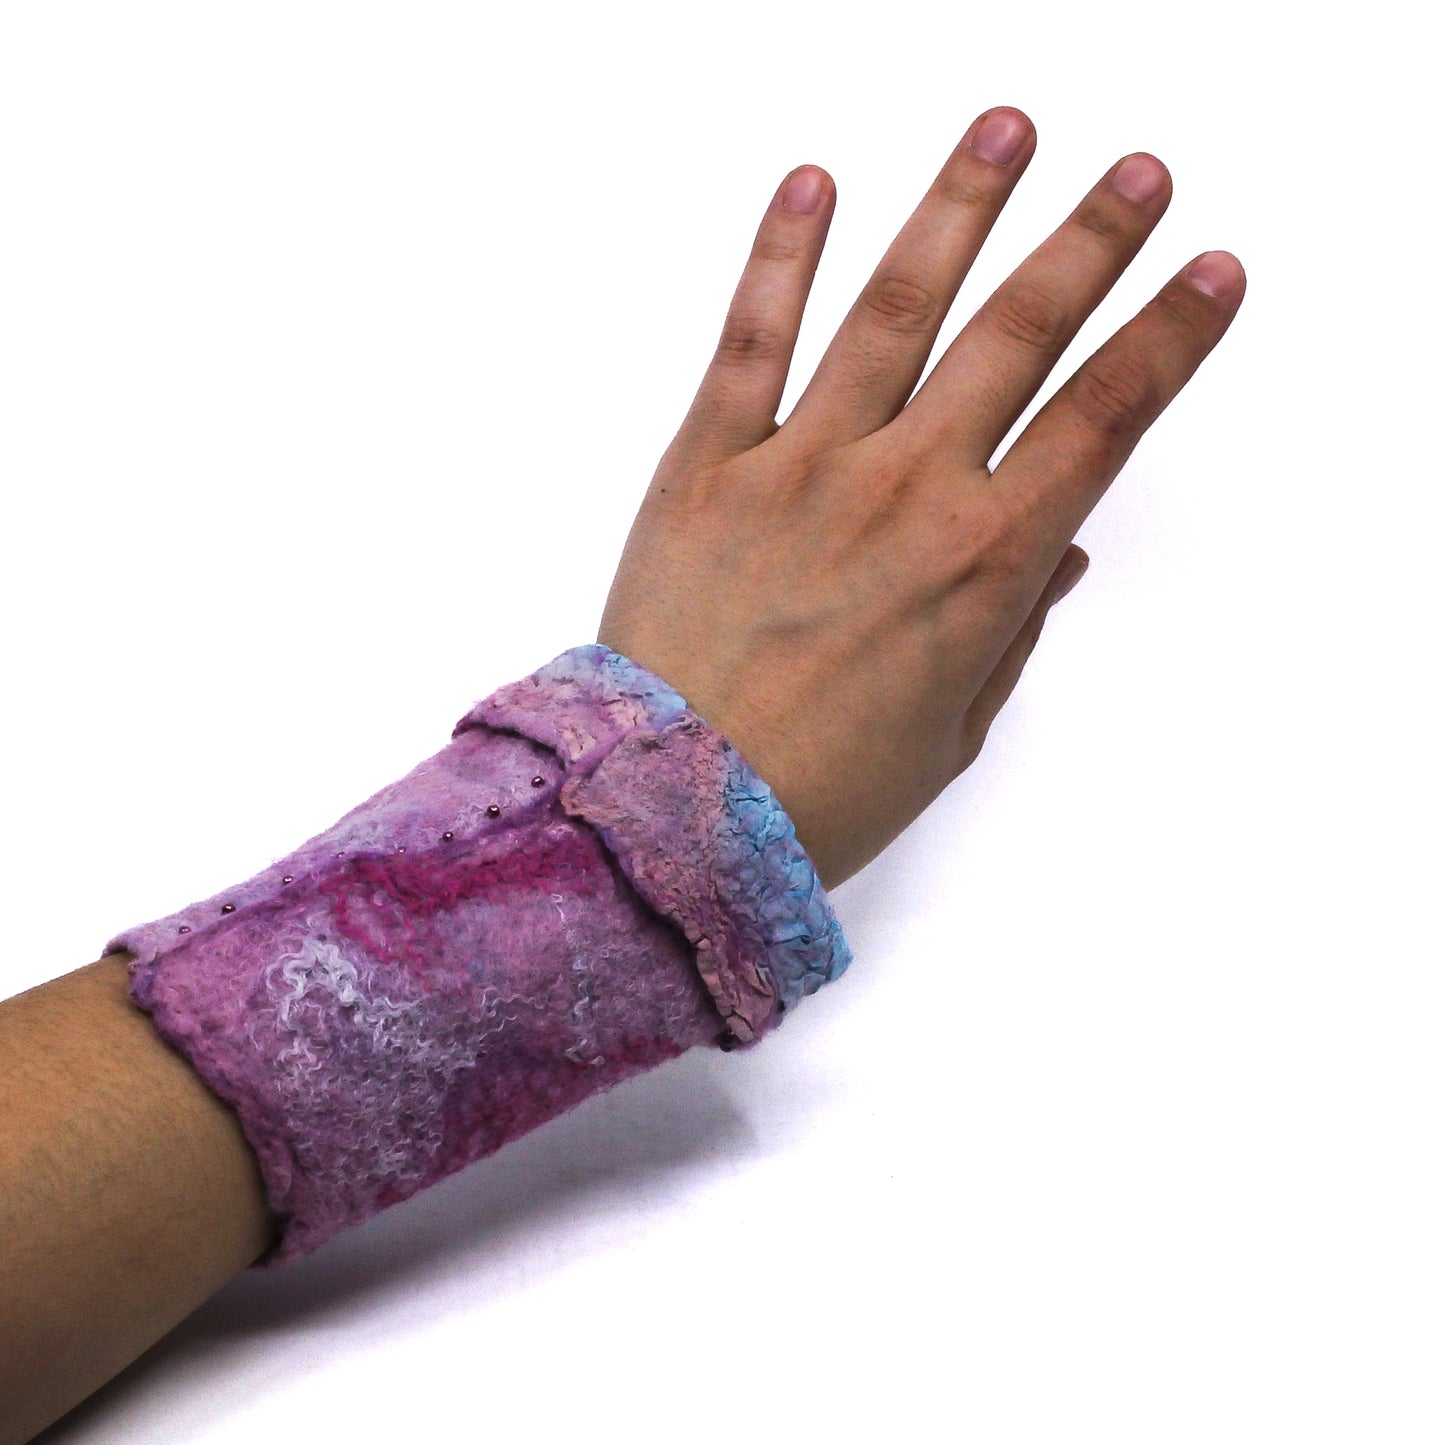 An arm wearing pink wrist wamer